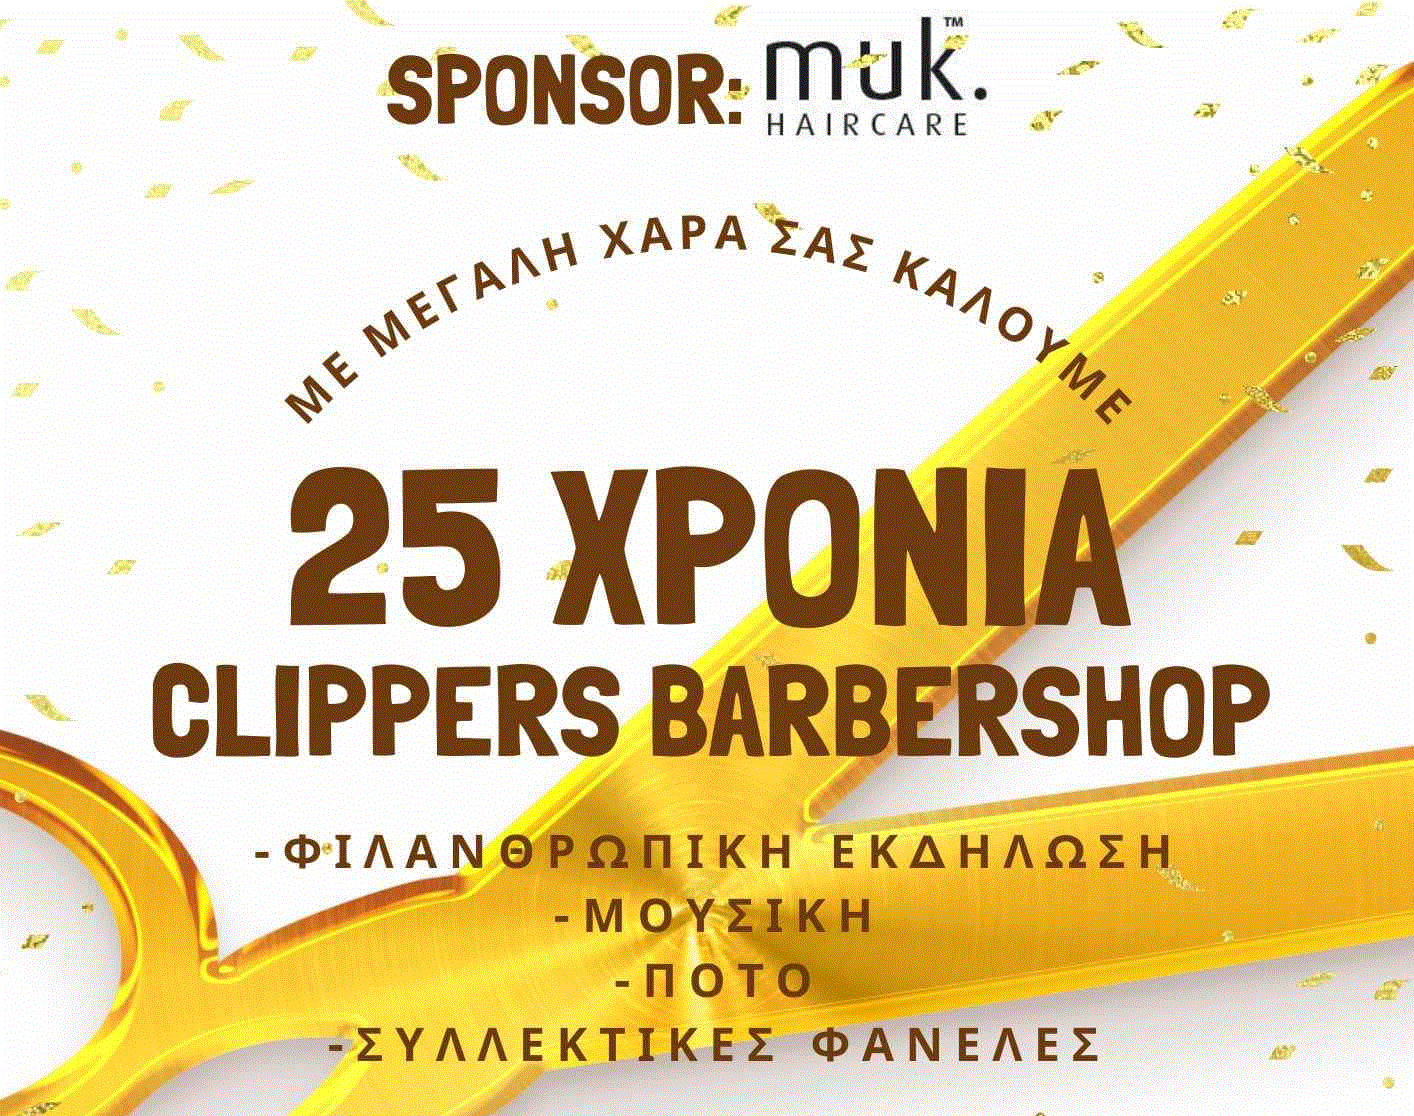 Τo Clippers barber shop γιορτάζει τα 25 χρόνια λειτουργίας του και σας προσκαλεί σε μια φιλανθρωπική εκδήλωση